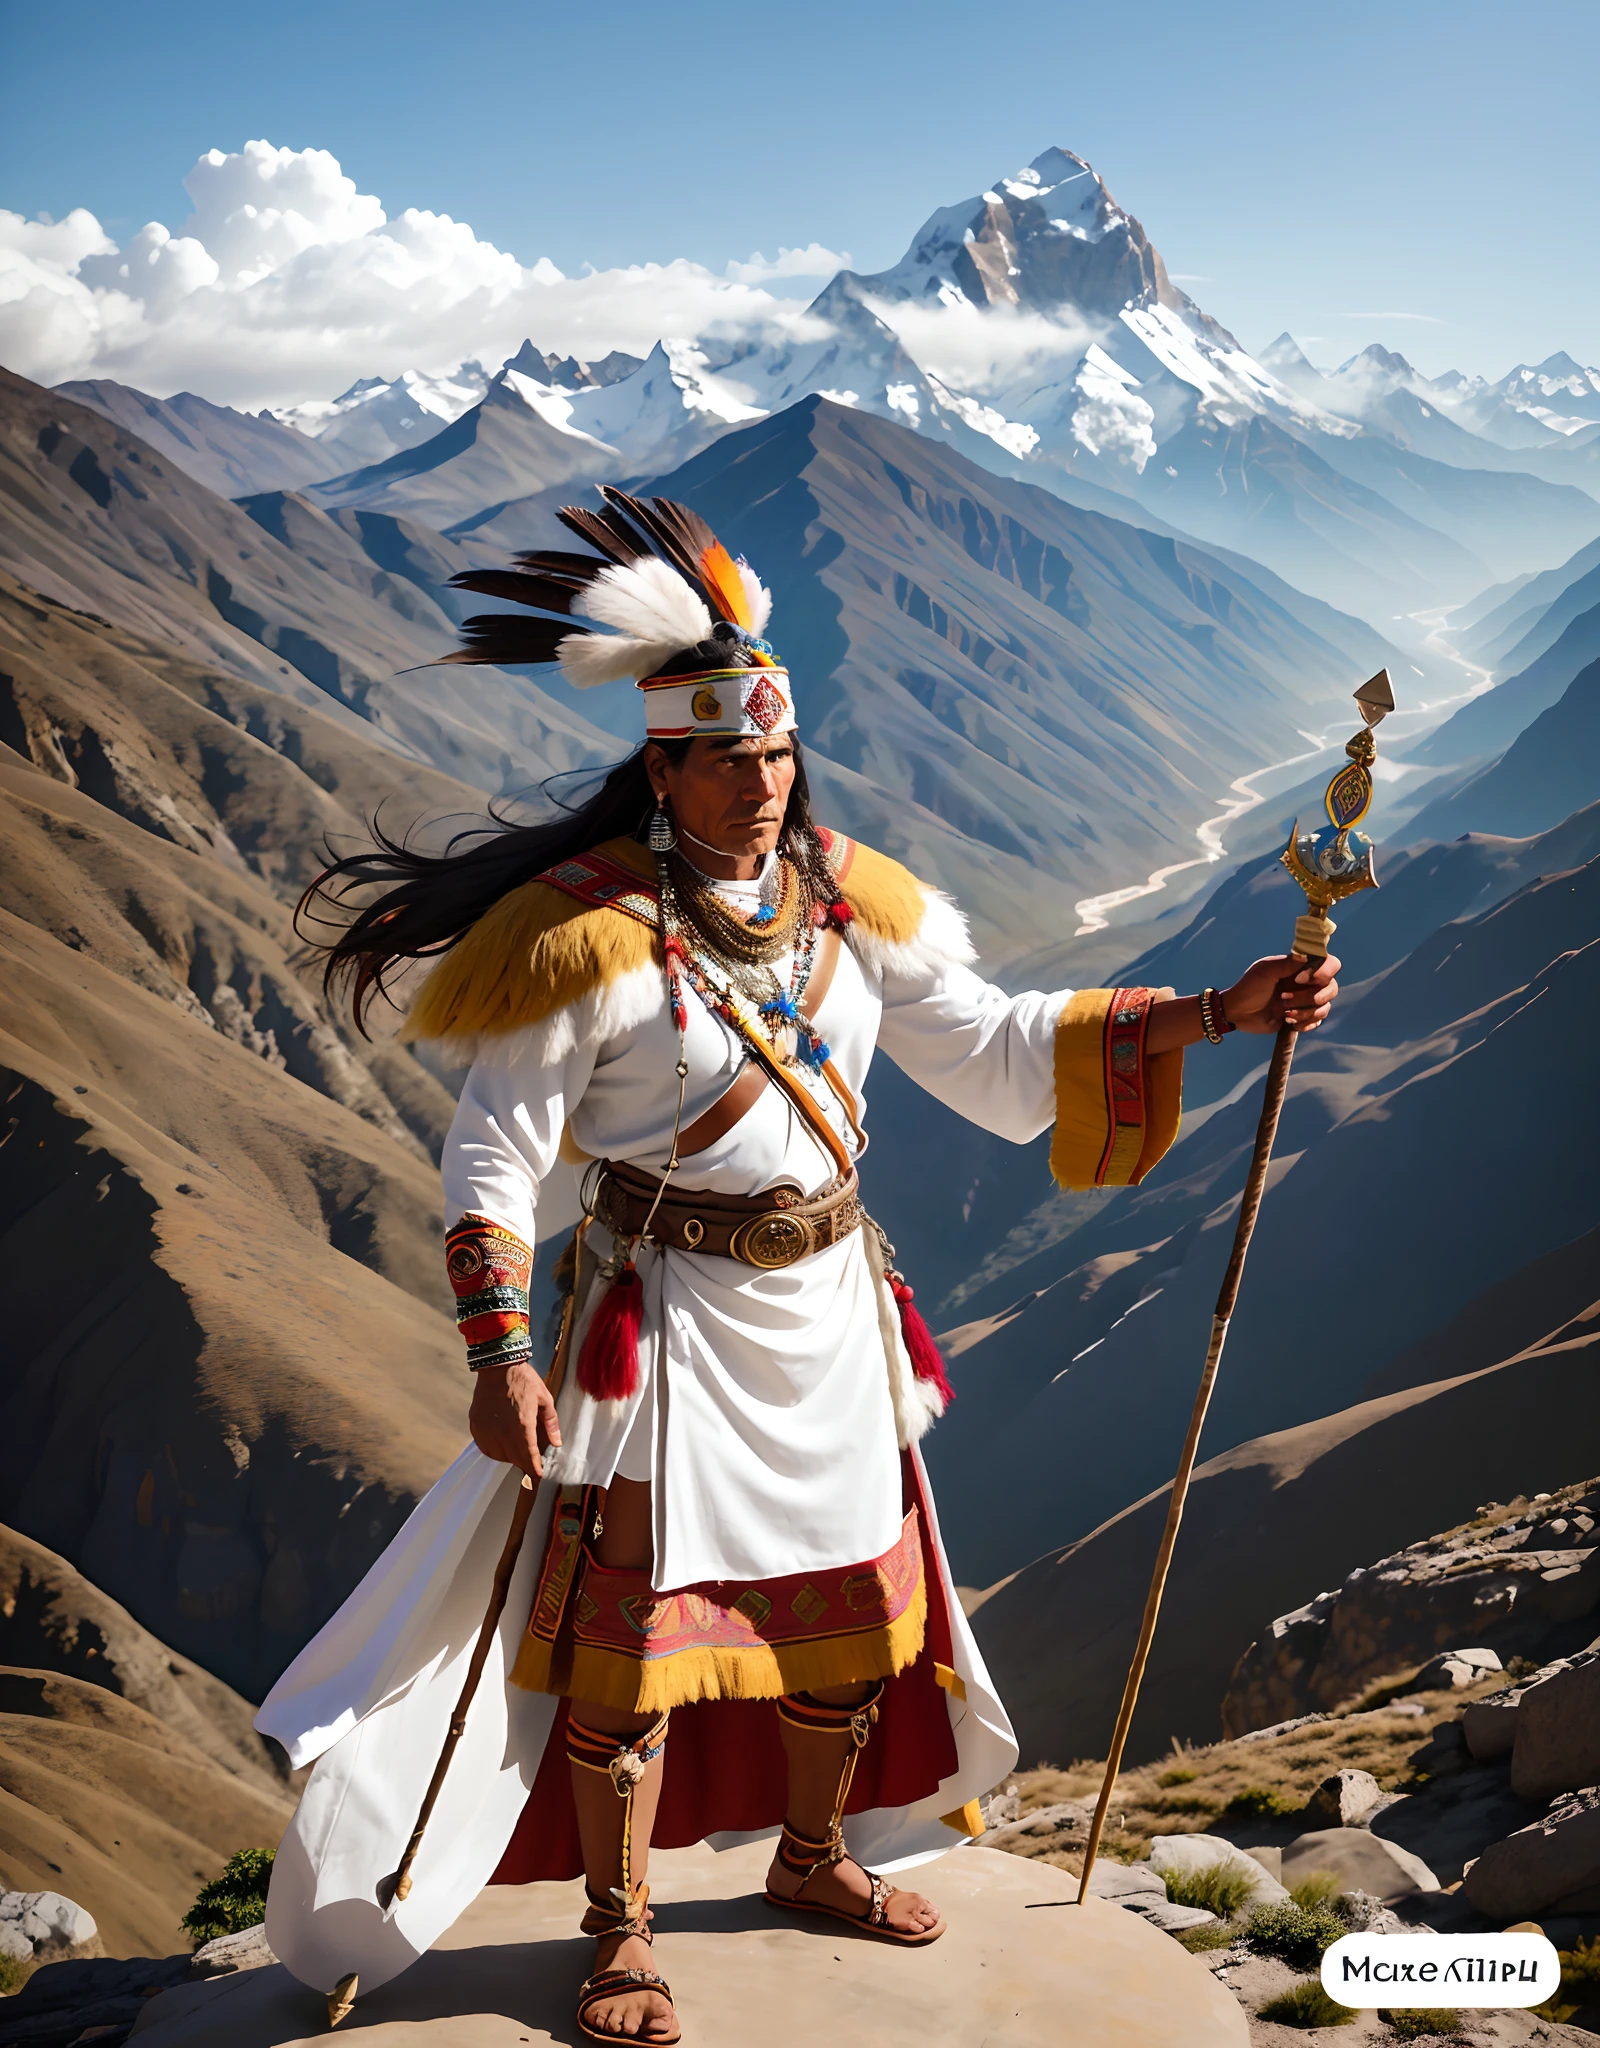 50 岁的土著印加男子身穿白色和金色的衣服，手拿长矛，站在岩石上, 在背景冰山喜马拉雅山西藏, 身着萨满服饰的印度战士, 克丘亚语, 超级详细, 8千, 超现实主义,